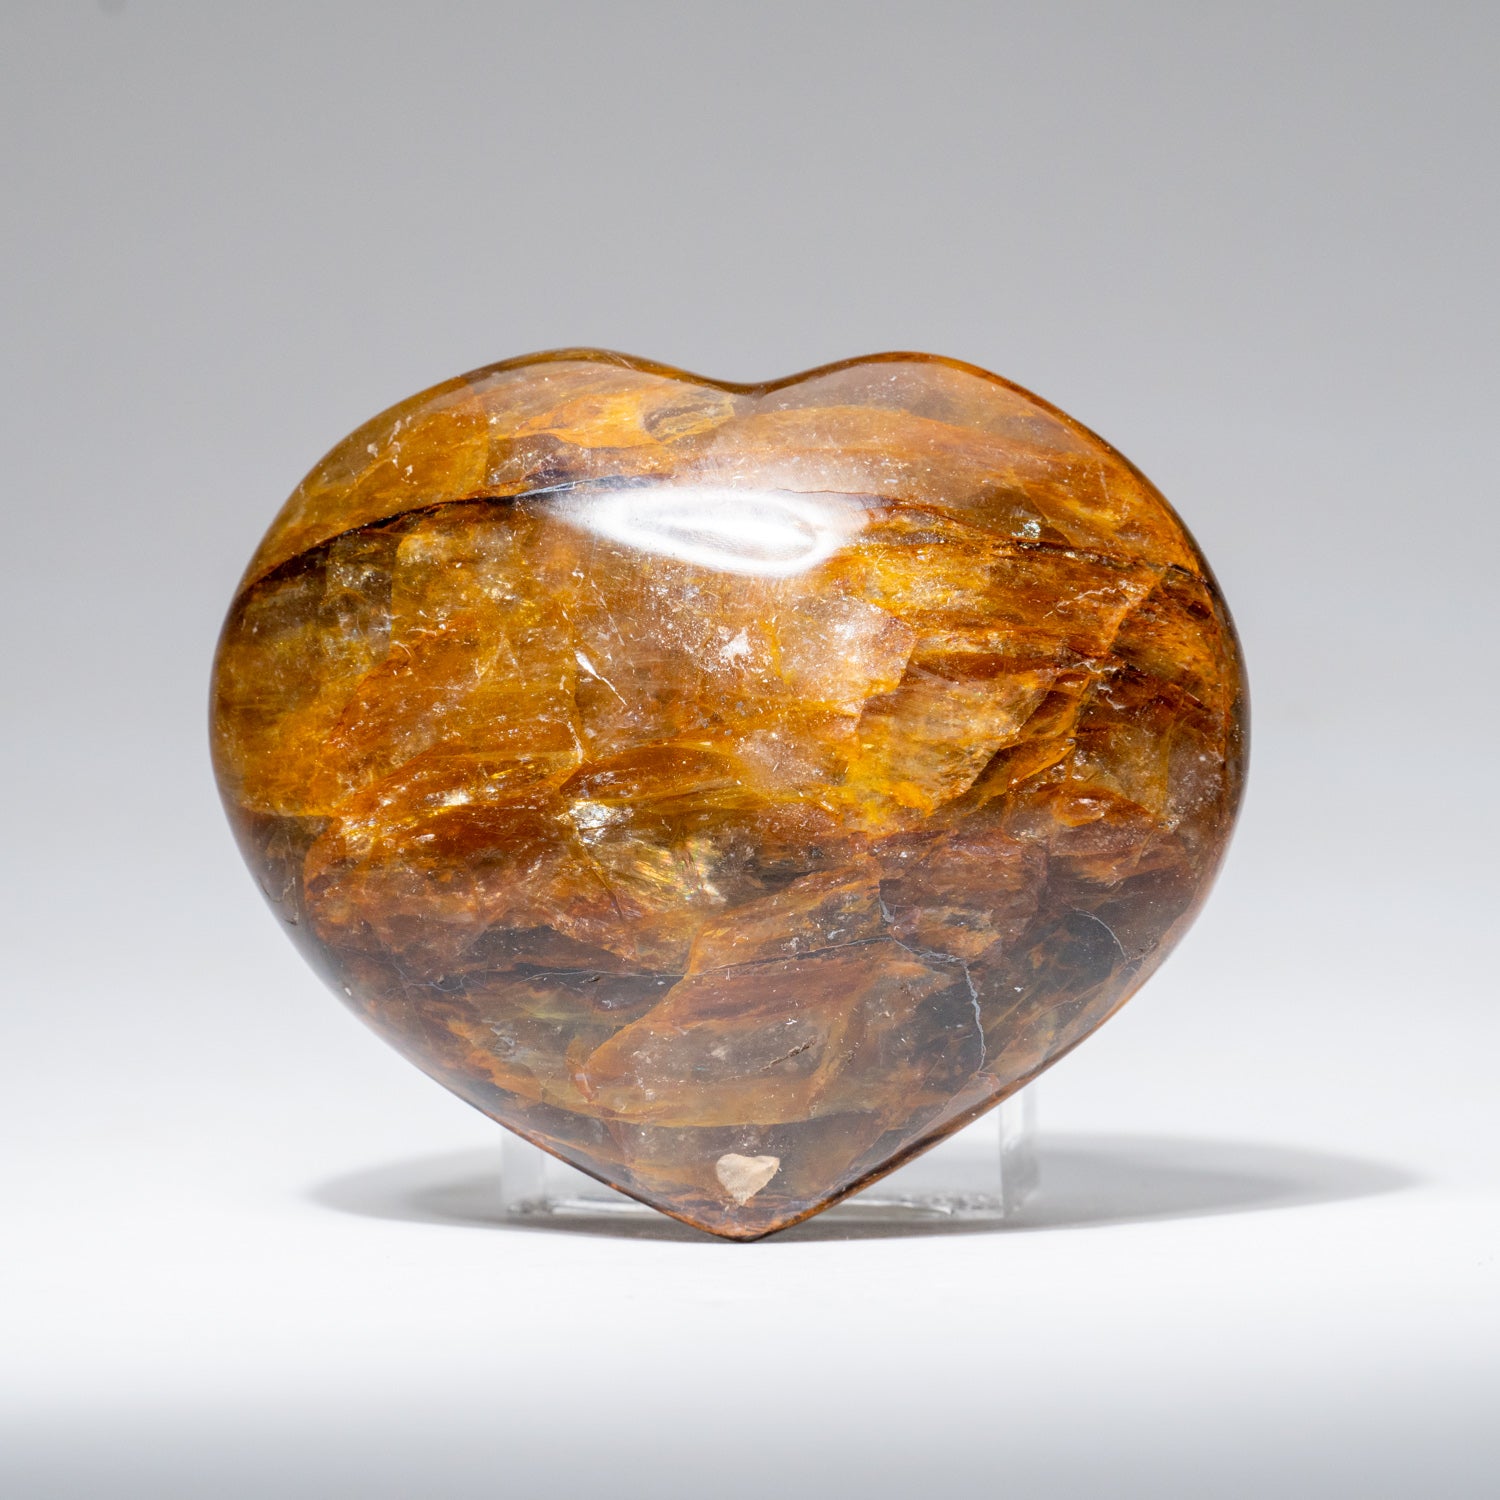 Polished Smoky Quartz Heart from Madagascar (262.2 grams)